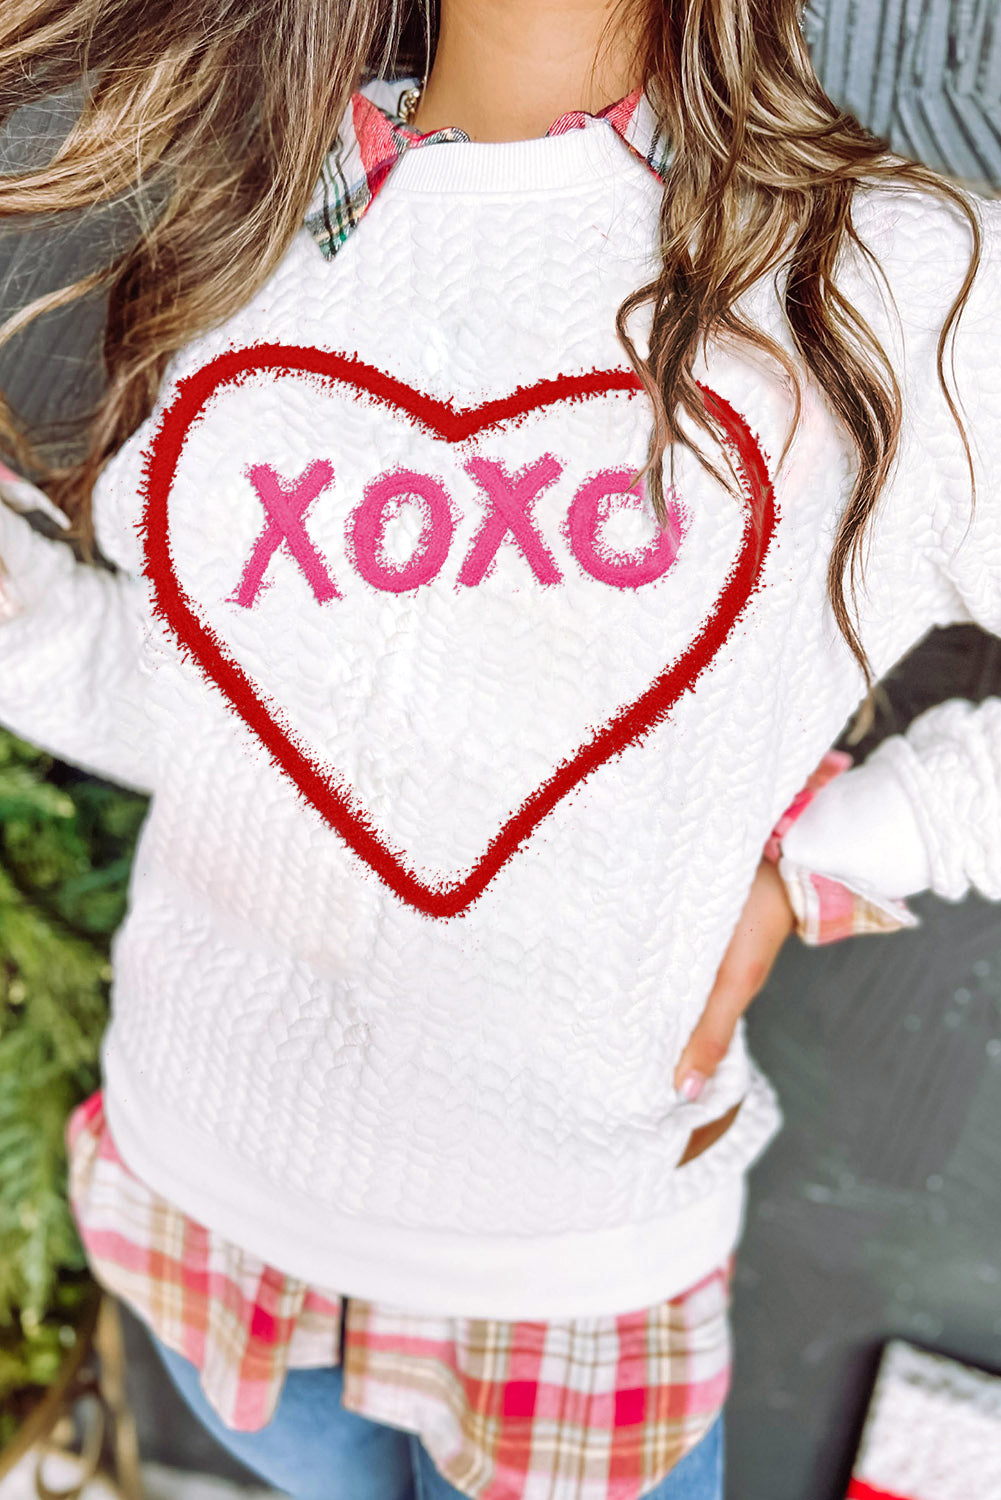 Racing Red Heart XOXO Chenille besticktes strukturiertes Sweatshirt